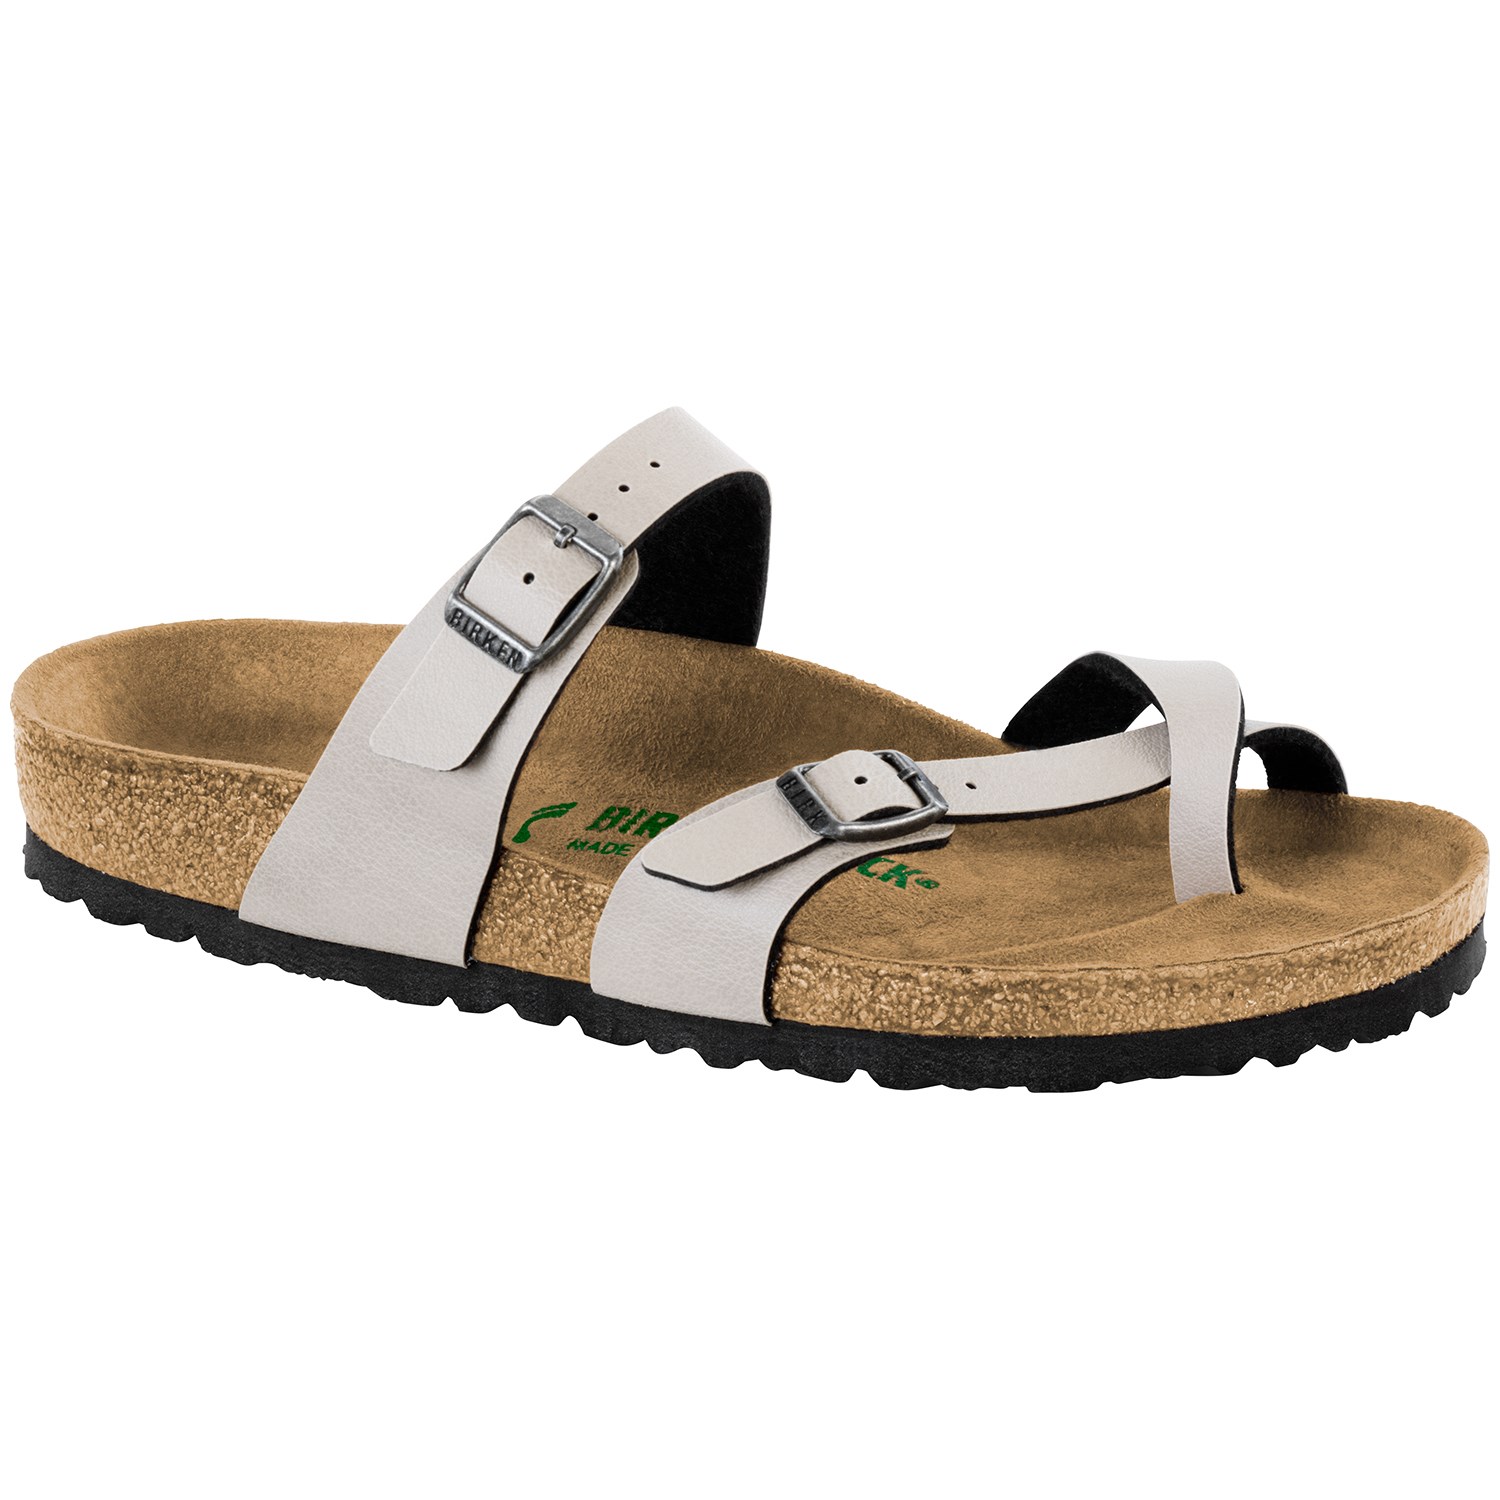 vegan birkenstock style sandals